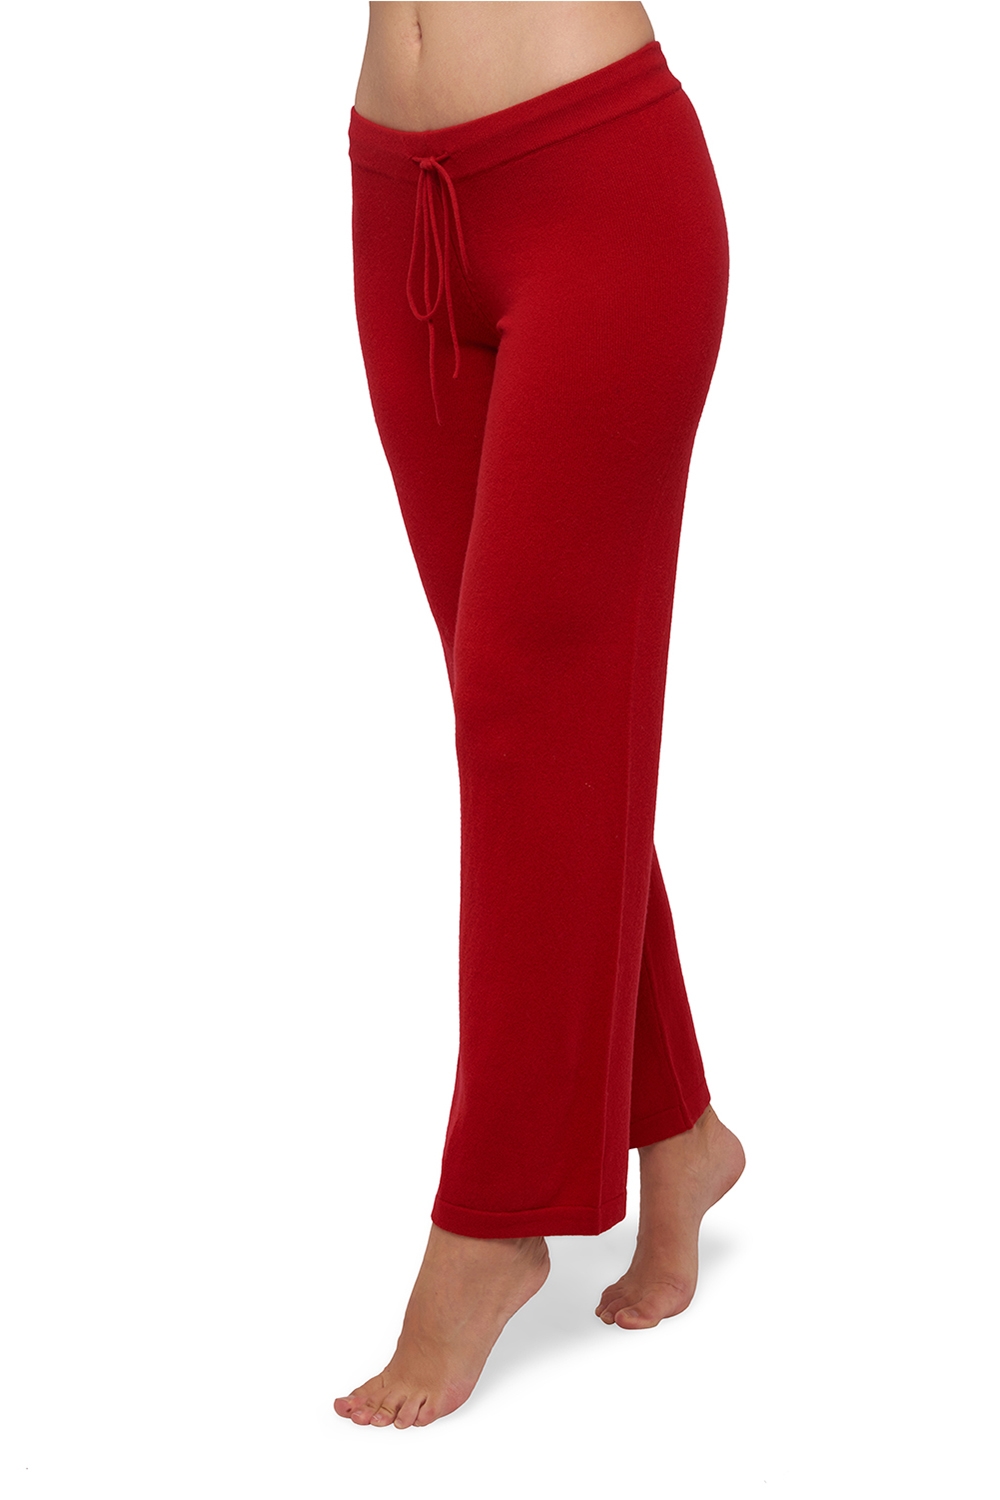 Cashmere cashmere donna pantaloni leggings malice rosso rubino 4xl